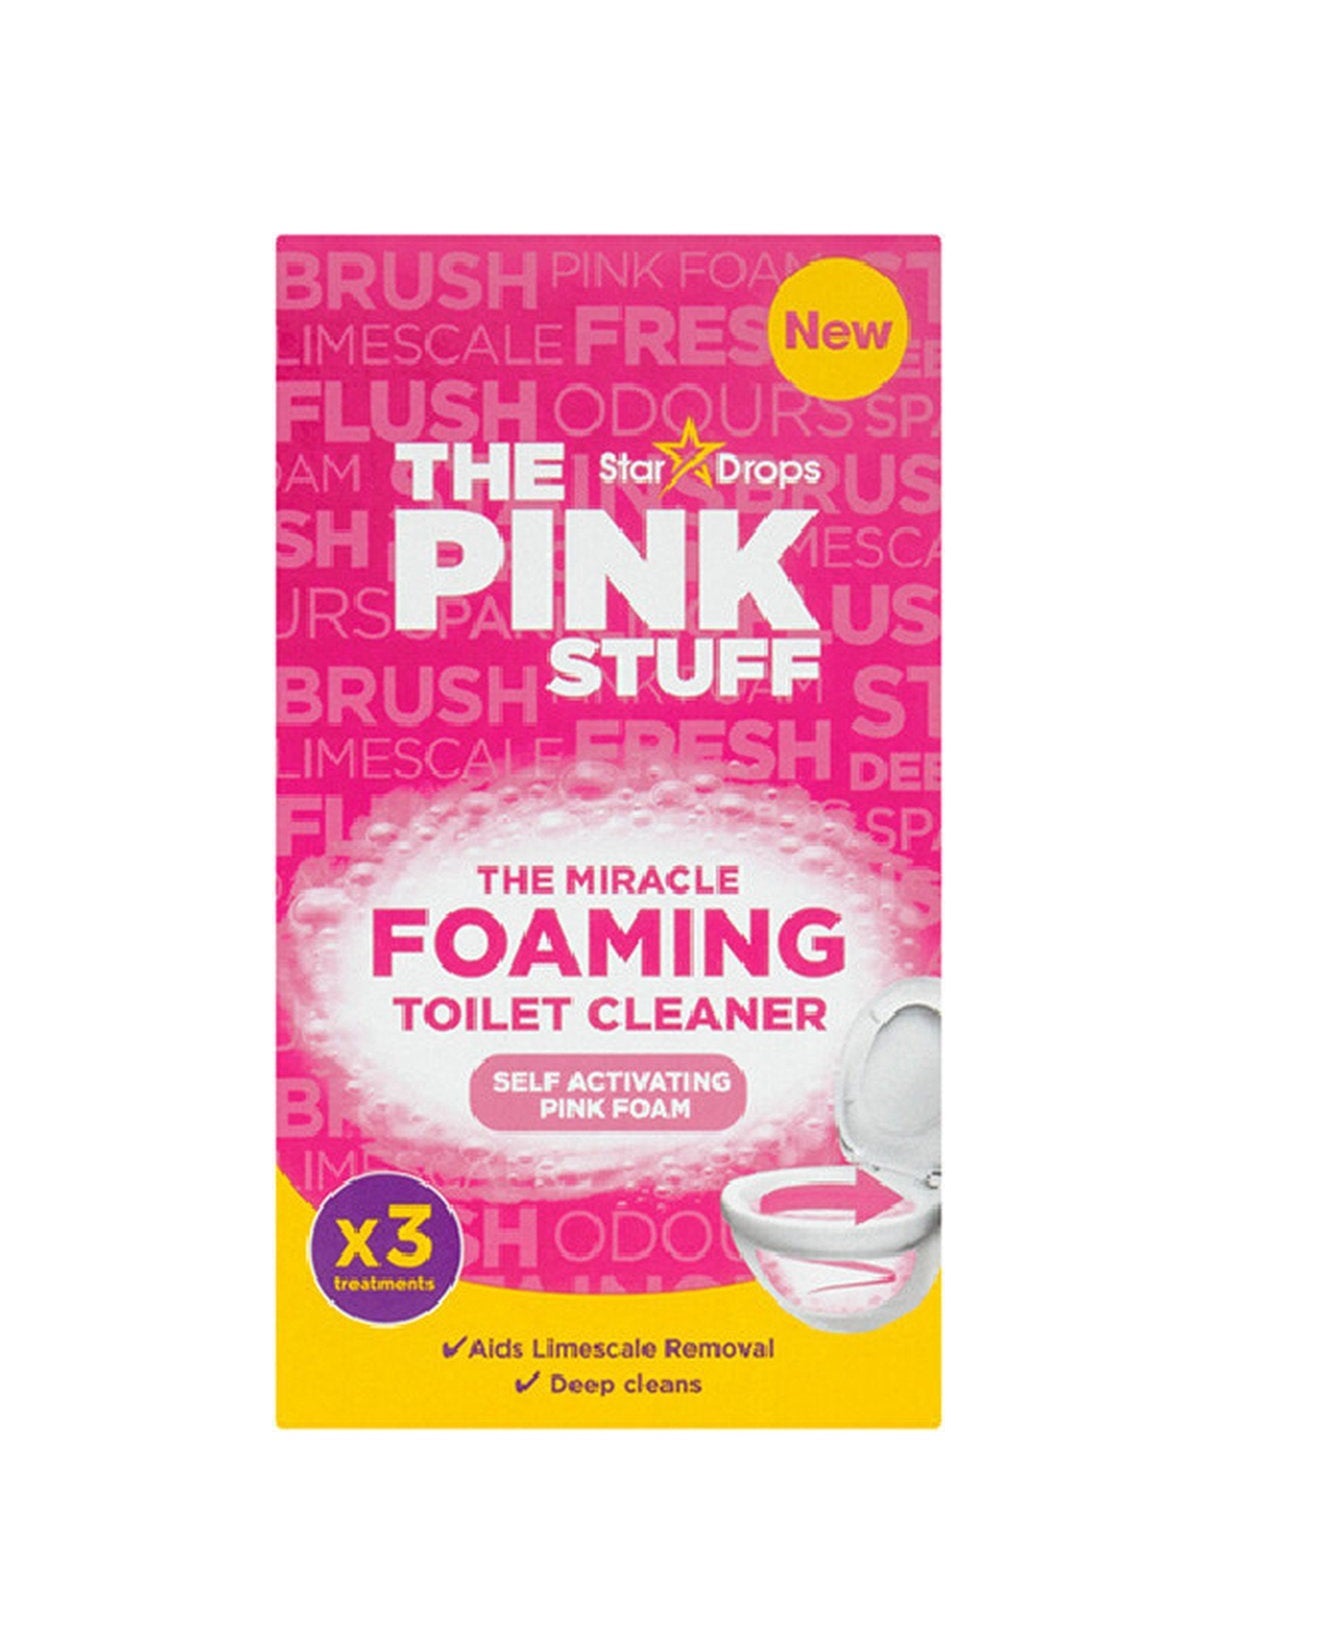 NUEVO The Pink Stuff | El milagroso polvo limpiador espumoso | Polvo limpiador de inodoros | 3 x 100 gramos